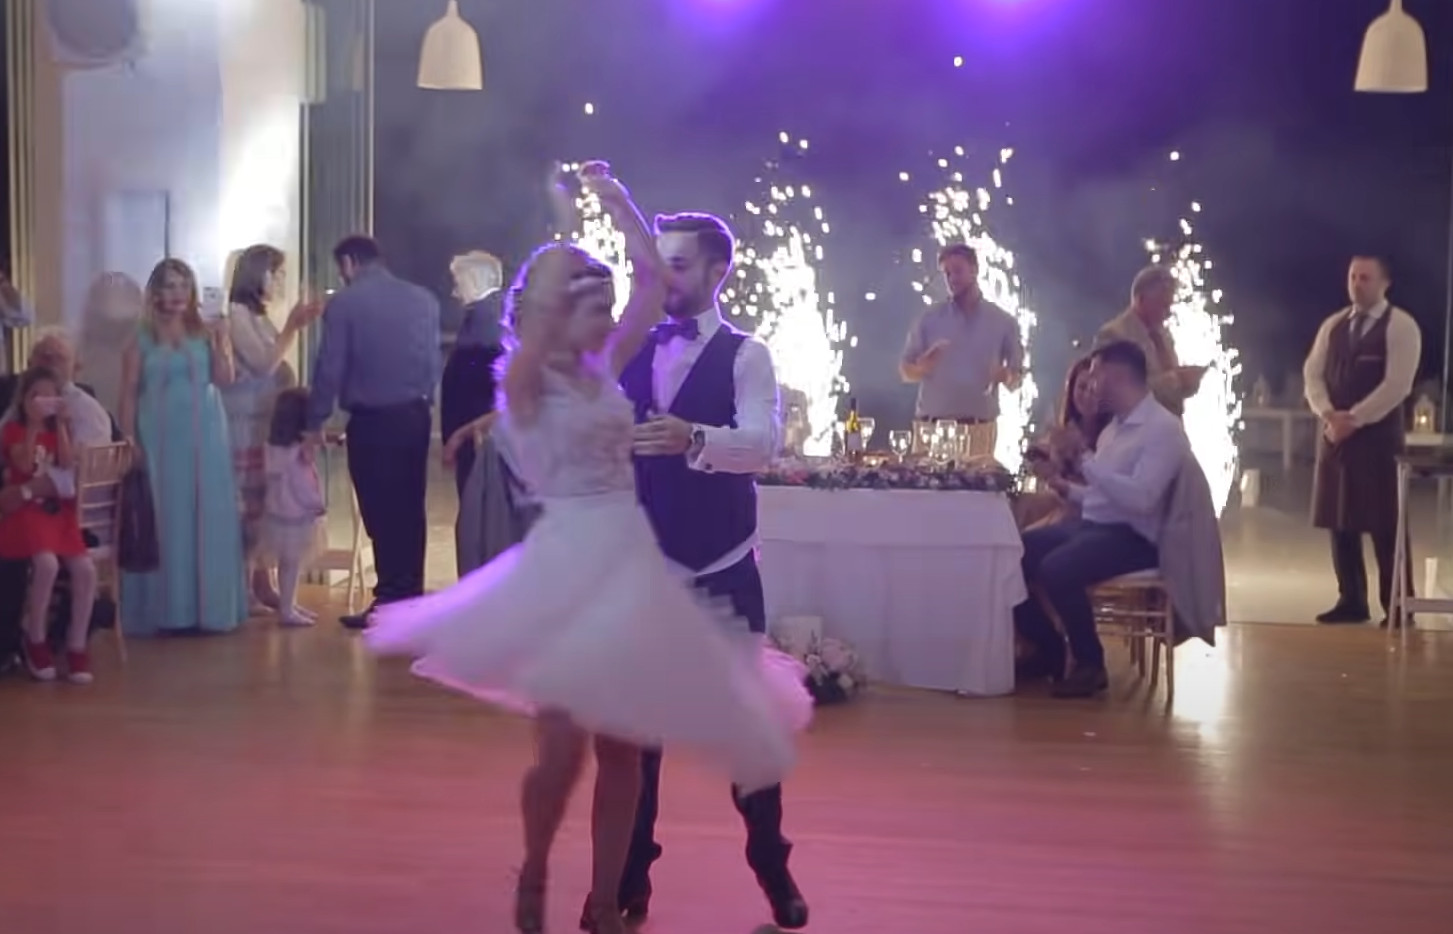 Zjawiskowy pierwszy taniec: Mistrzowskie połączenie stylów! To hit internetu!